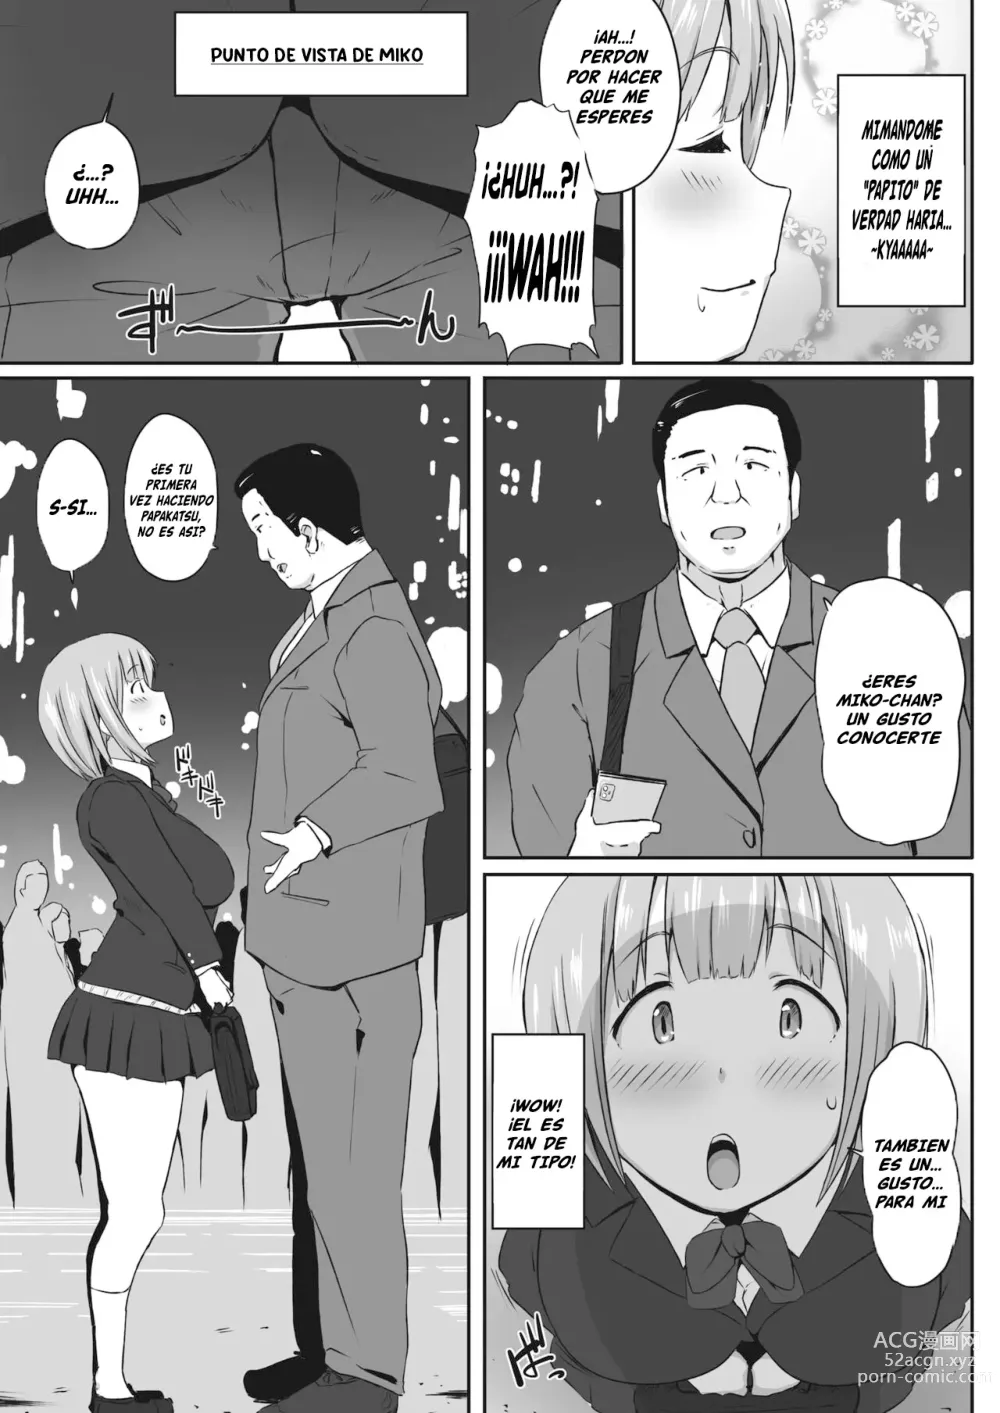 Page 3 of manga Mikokatsu